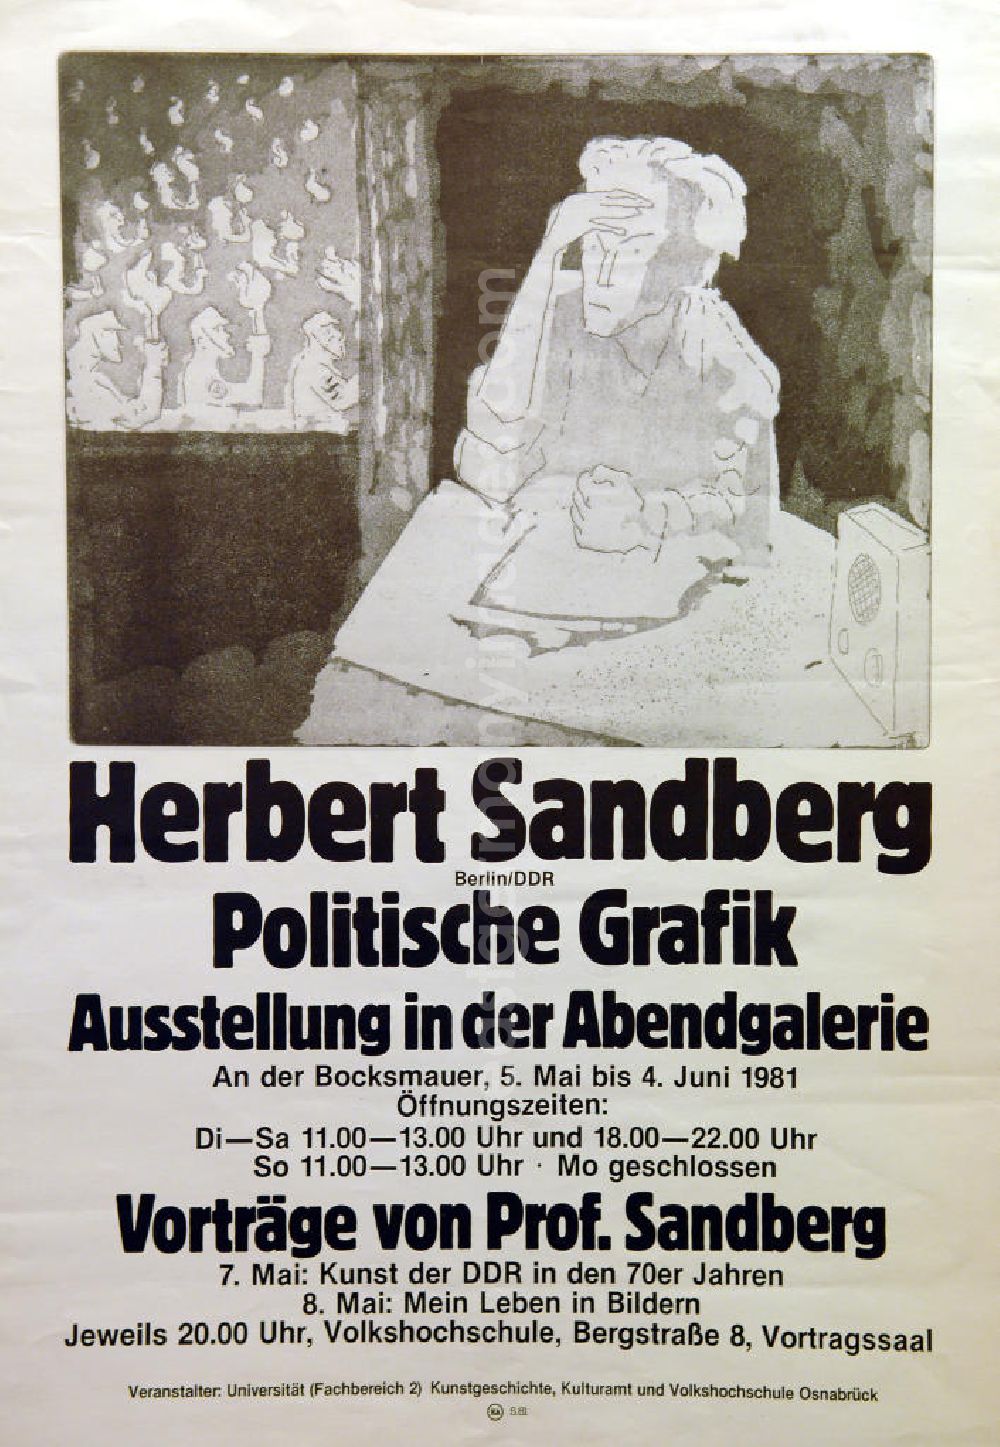 GDR photo archive: Berlin - Plakat der Ausstellung Herbert Sandberg (Berlin/DDR) Politische Grafik vom 05.05.-04.